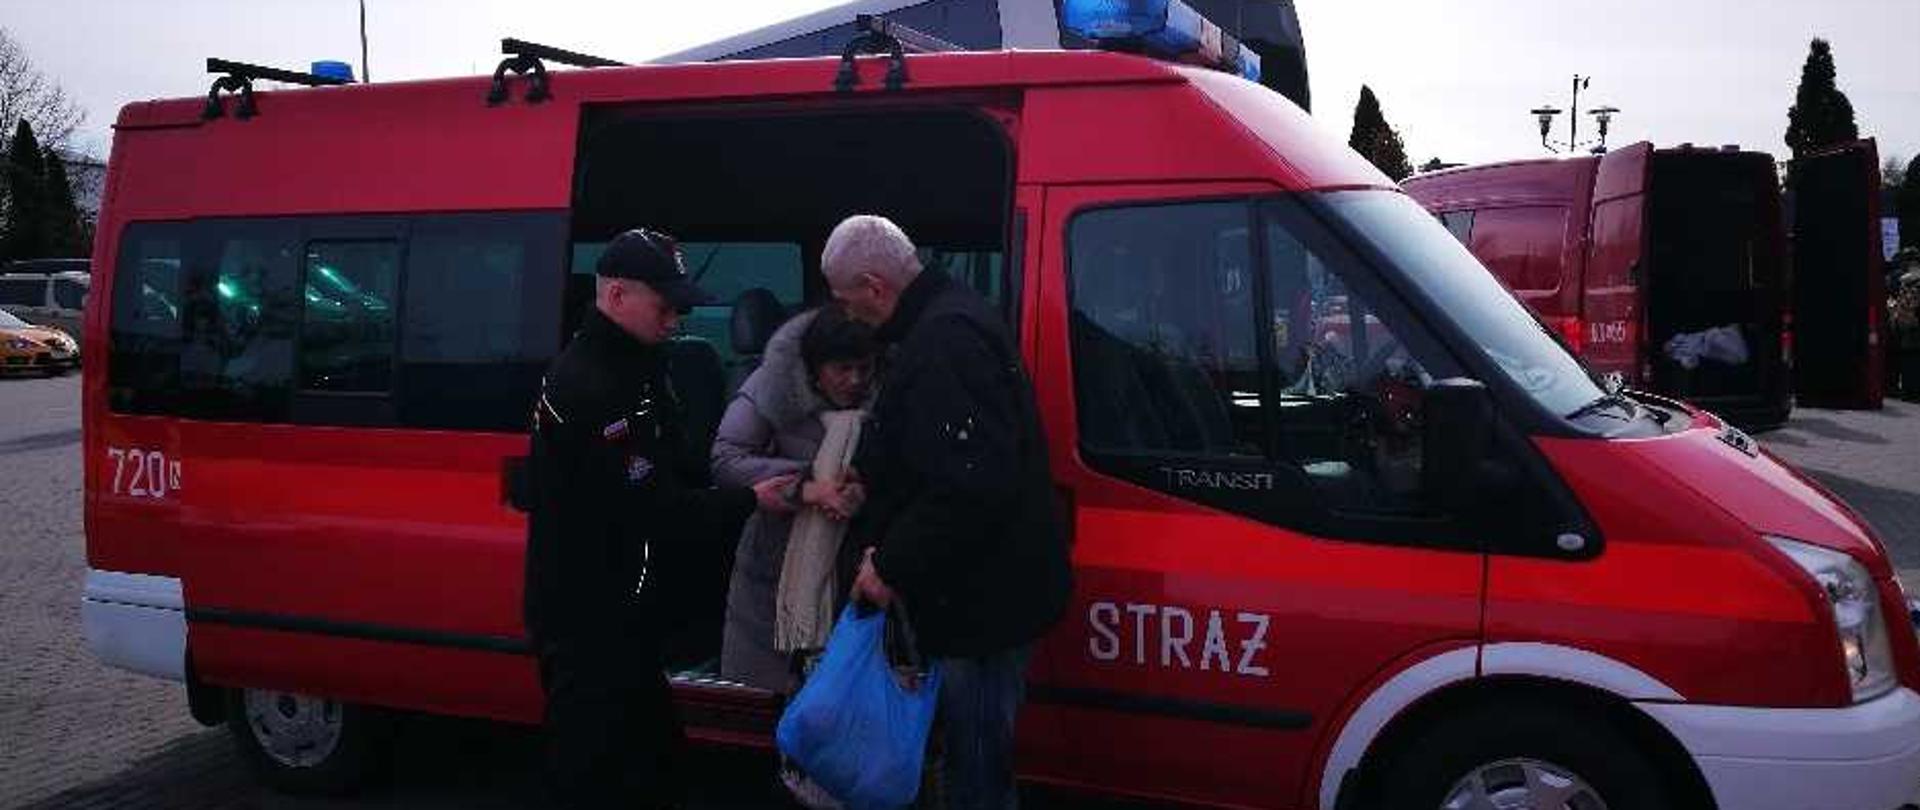 Strażak pomaga kobiecie i mężczyźnie z Ukrainy wysiąść z samochodu strażackiego.